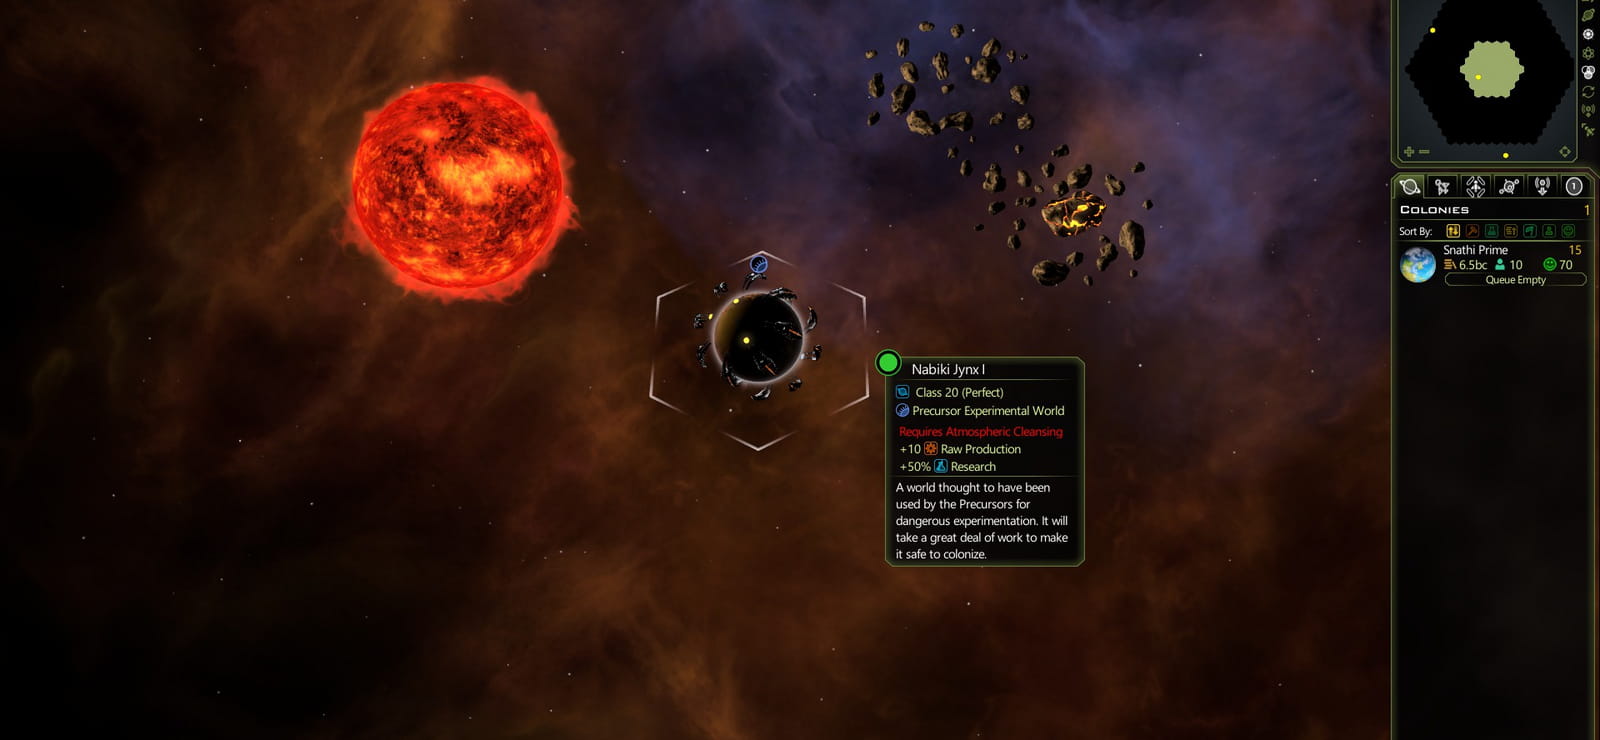 Galactic Civilizations III - Precursor Worlds DLC